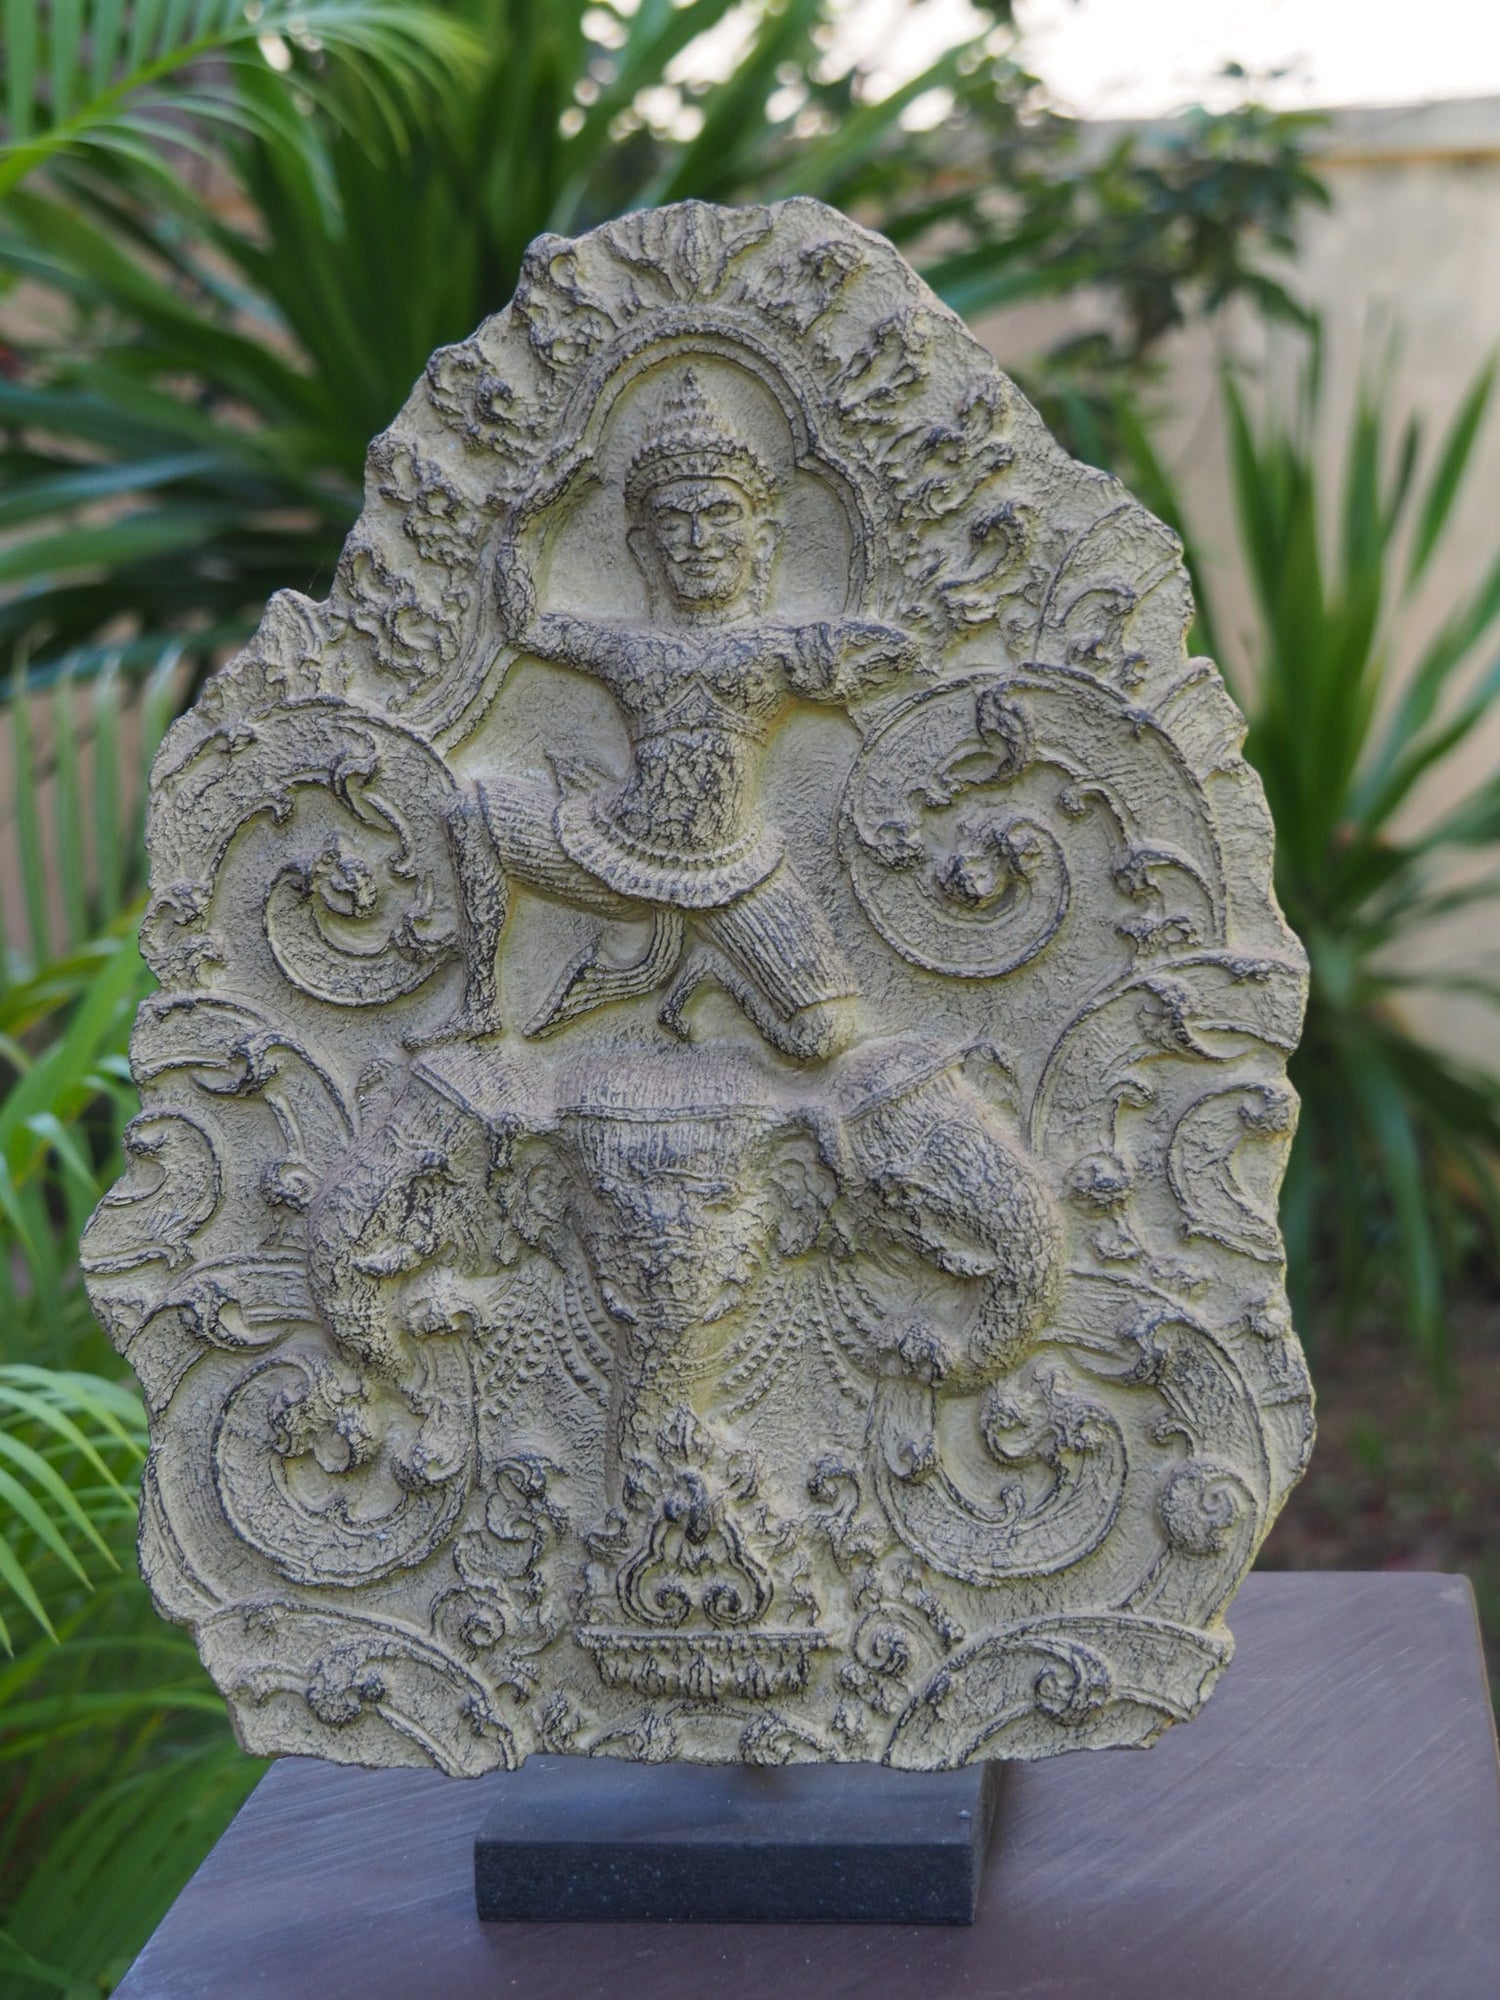 Indra on Airavata par Jayav Art